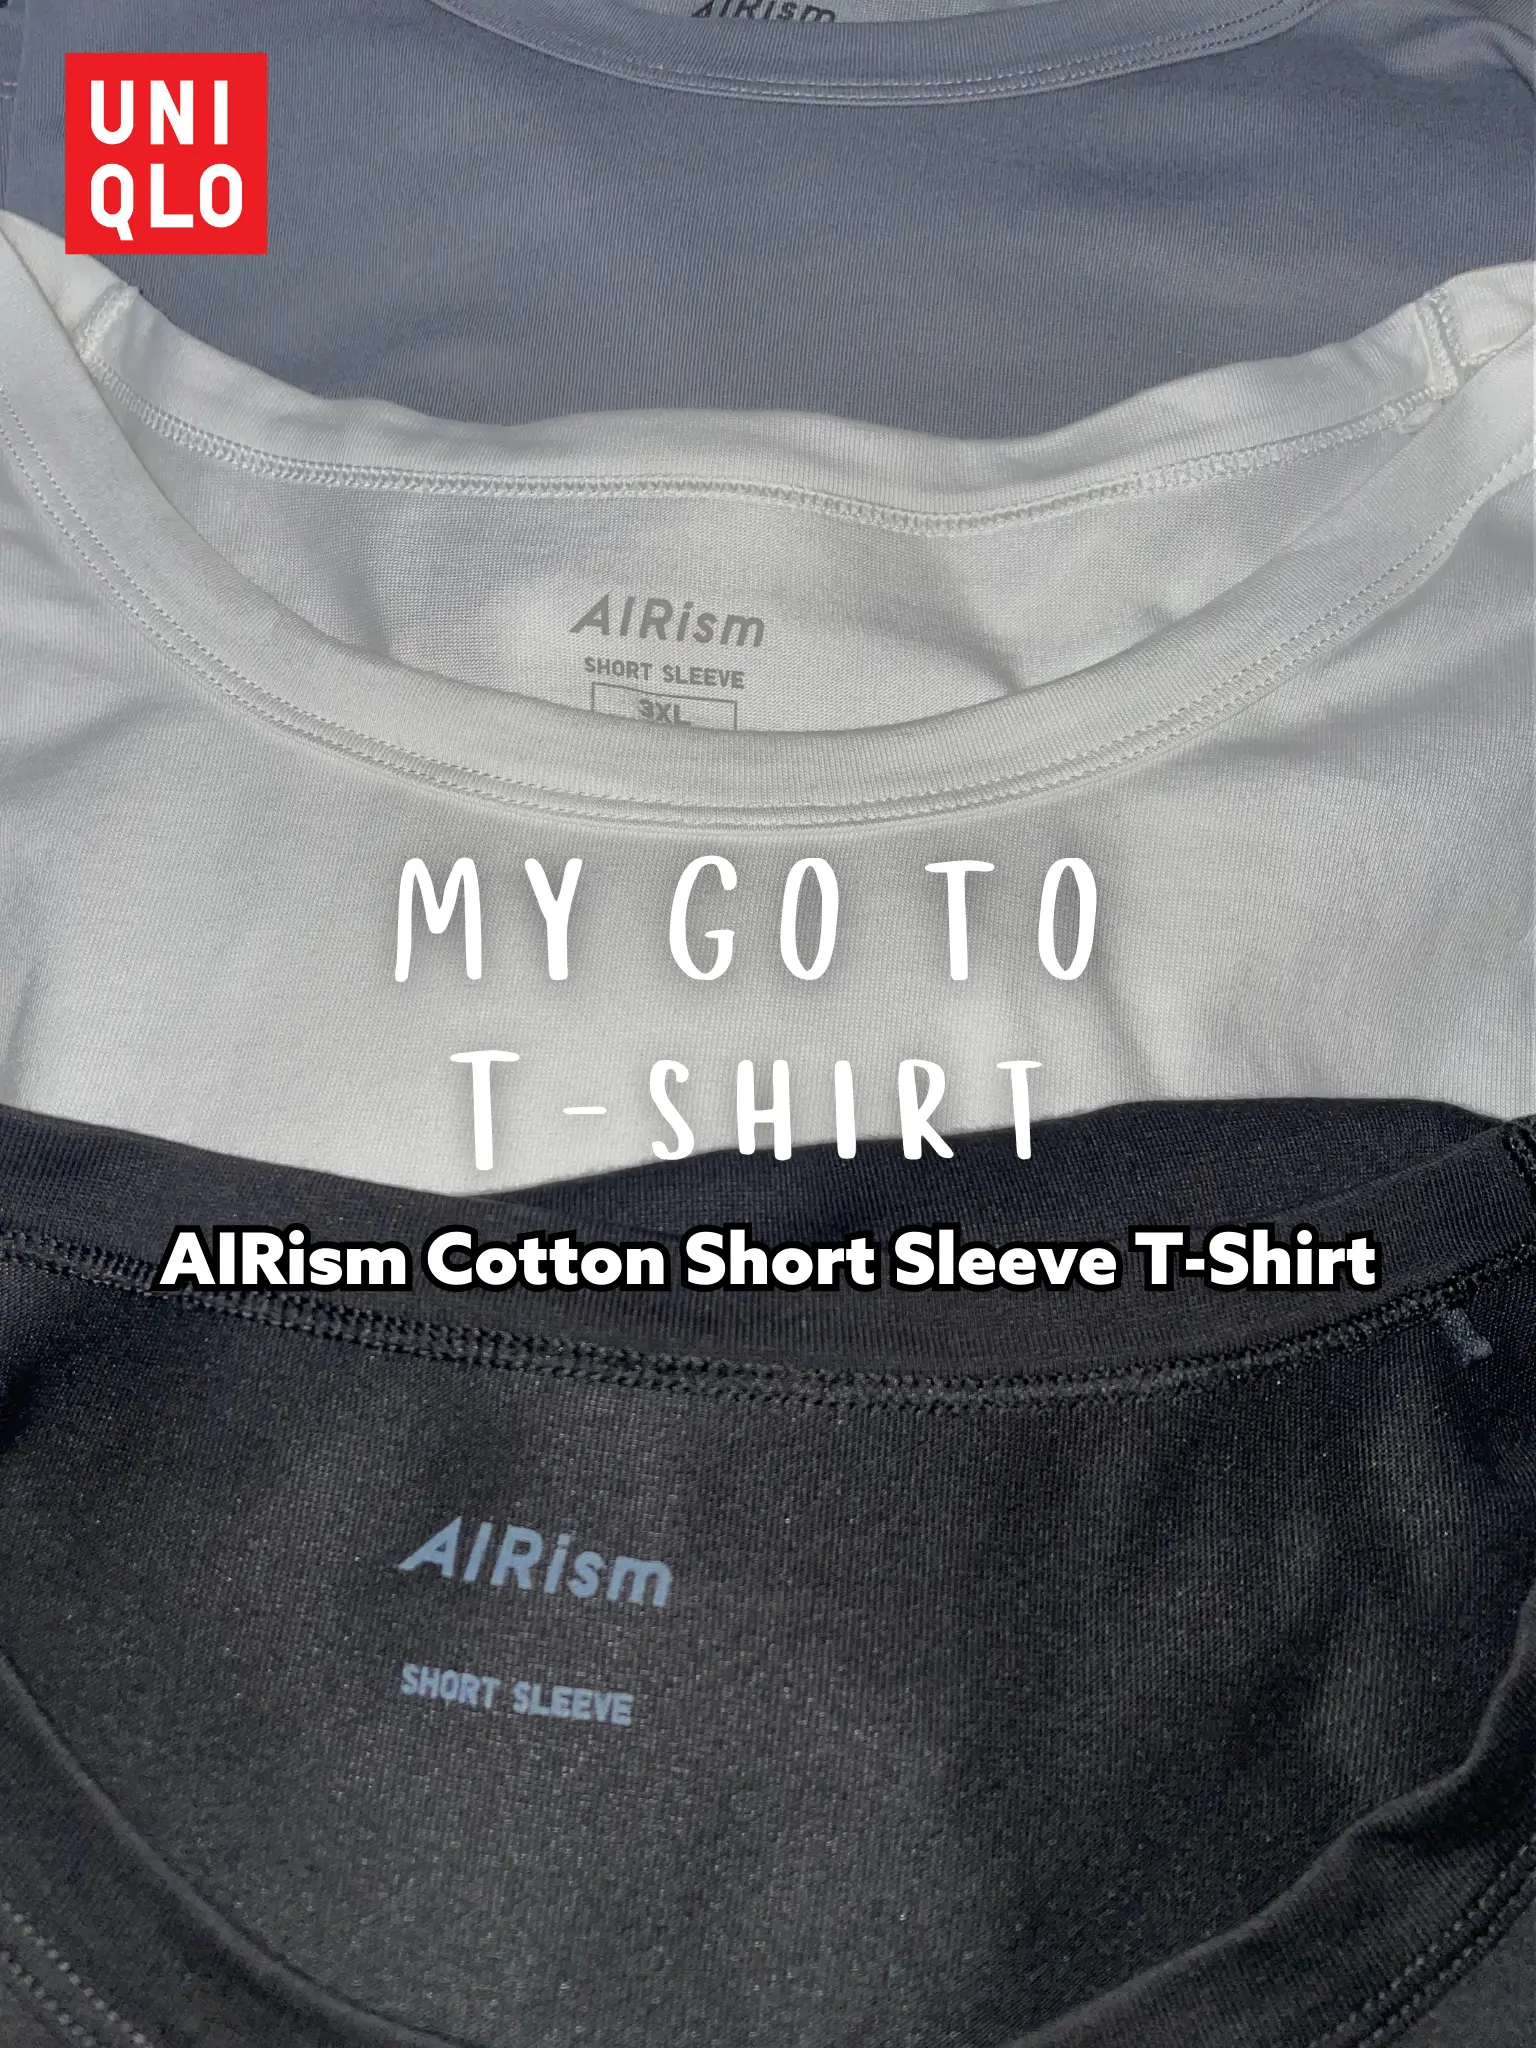 WOMEN'S AIRISM COTTON SHORT SLEEVE T-SHIRT DRESS